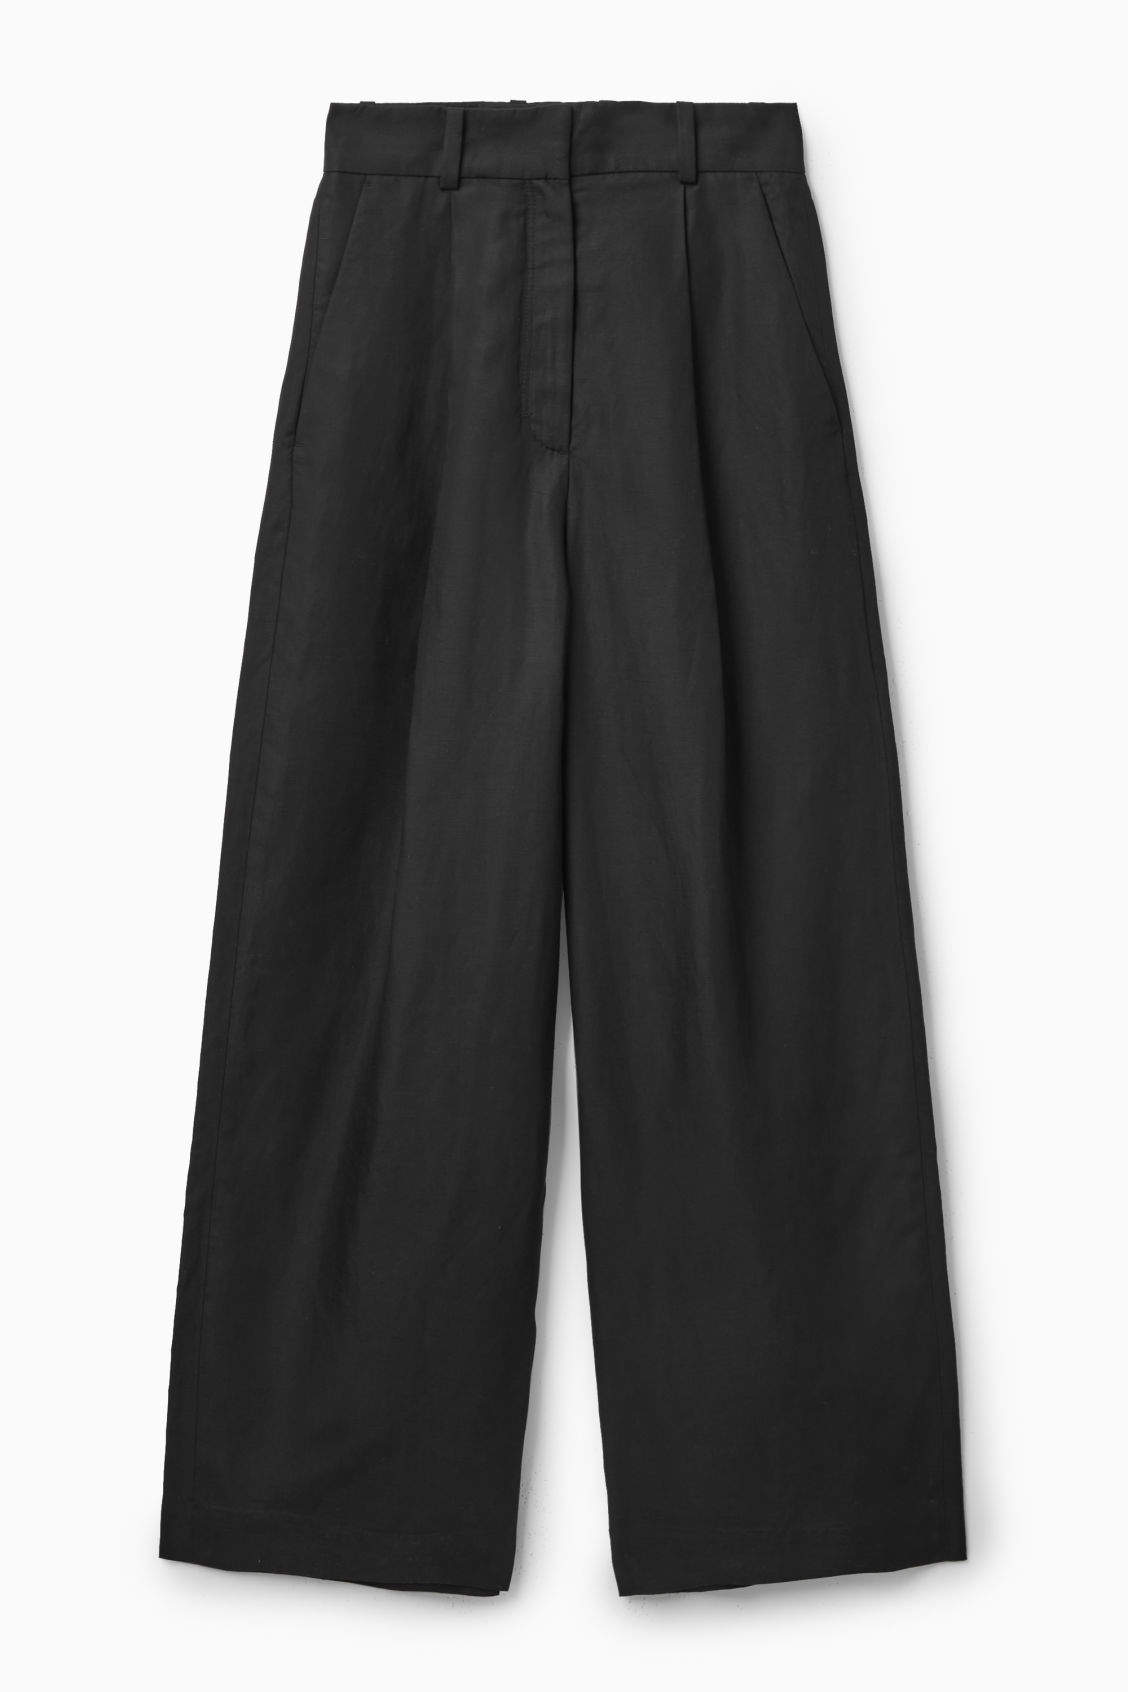 Los mejores pantalones de lino: negros